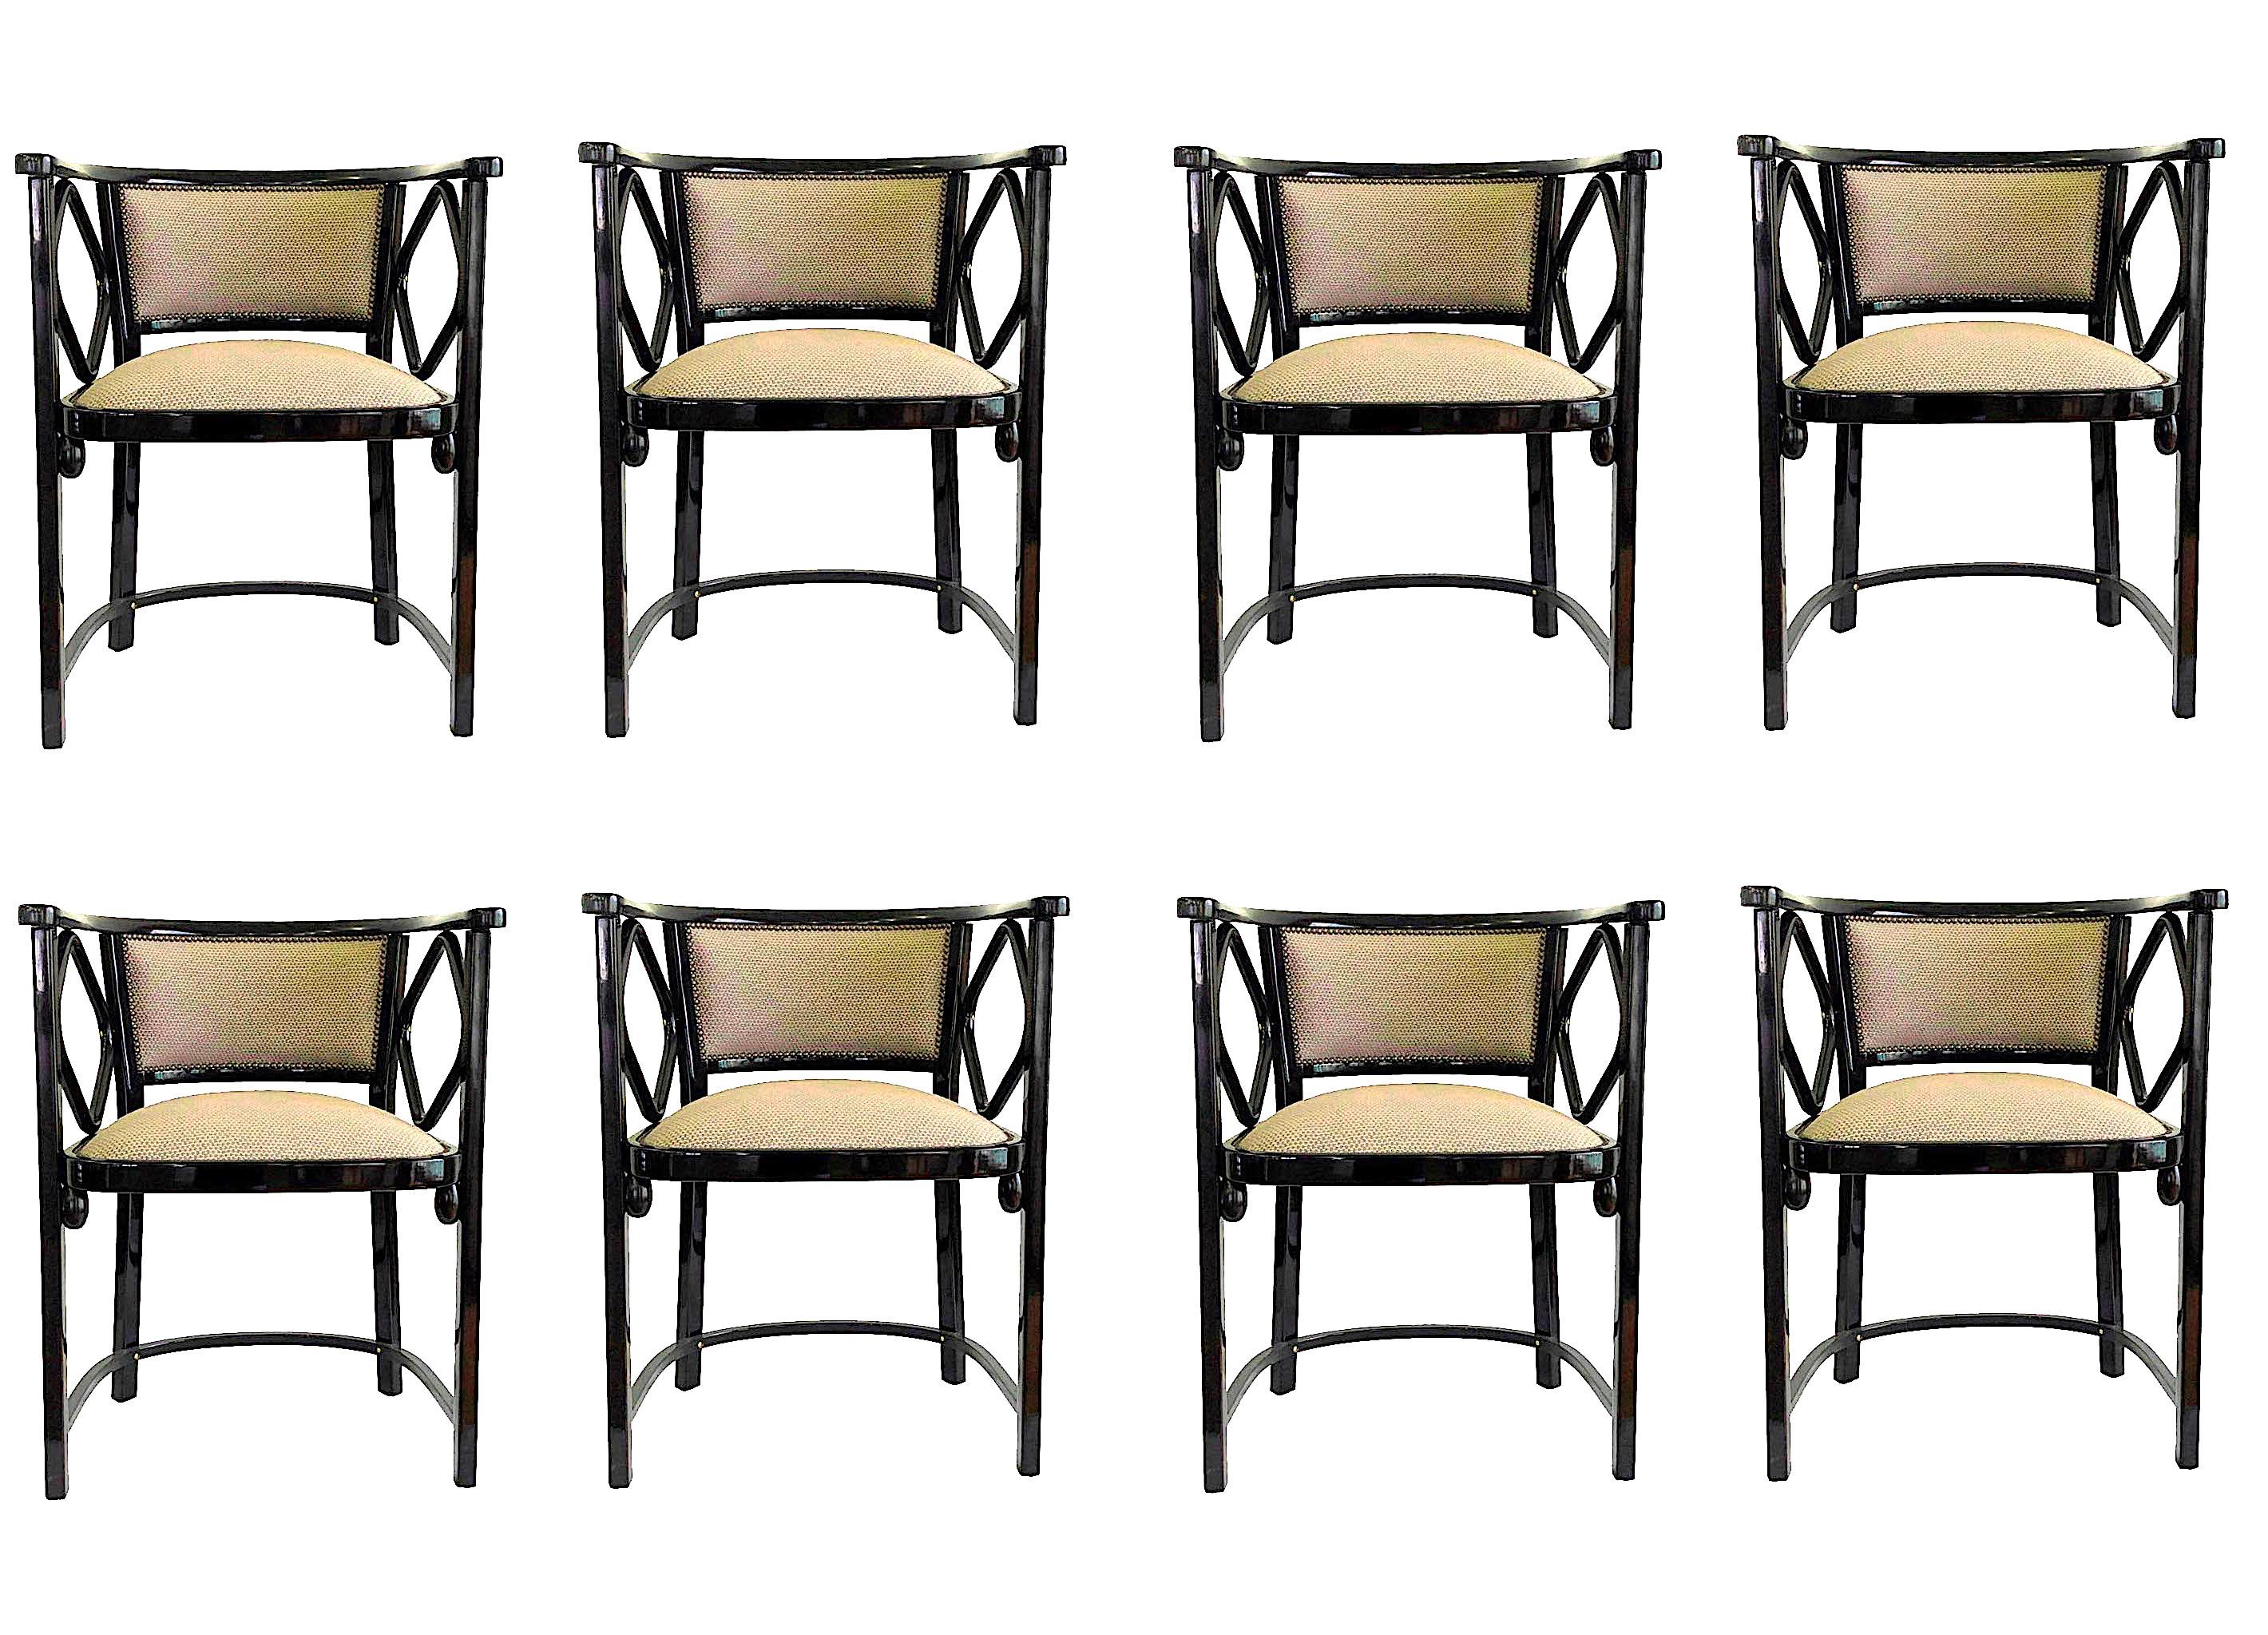 Ensemble de huit fauteuils par Thonet, Autriche. 
Ces chaises faisaient partie d'un ensemble réalisé sur commande pour une villa à Götzens, dans le Tyrol, en Autriche.
Designer : Josef Hoffmann
MATERIAL : Bois de hêtre cintré étuvé, vernis